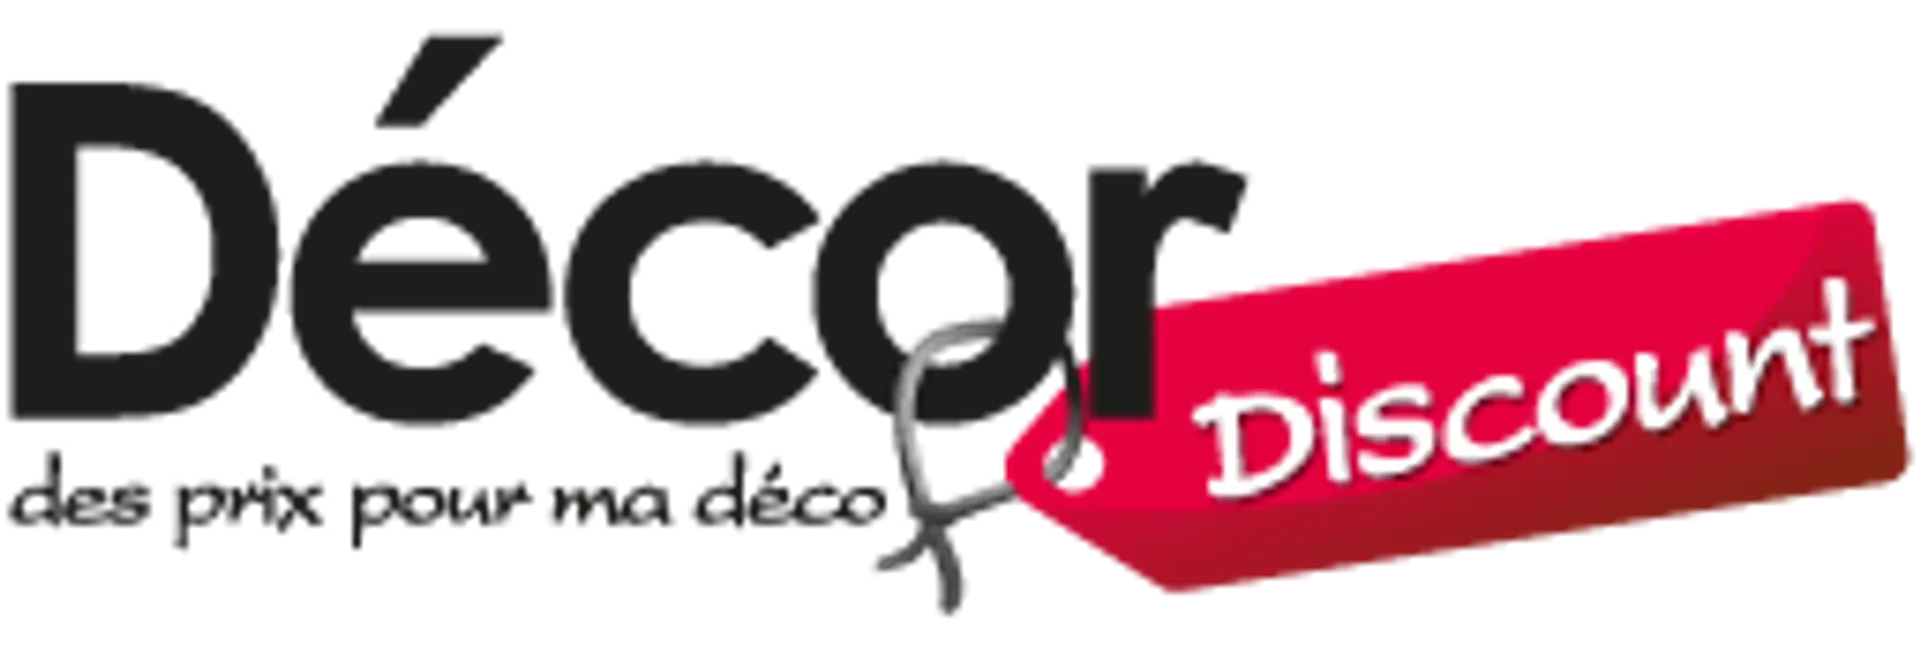 DÉCOR DISCOUNT logo